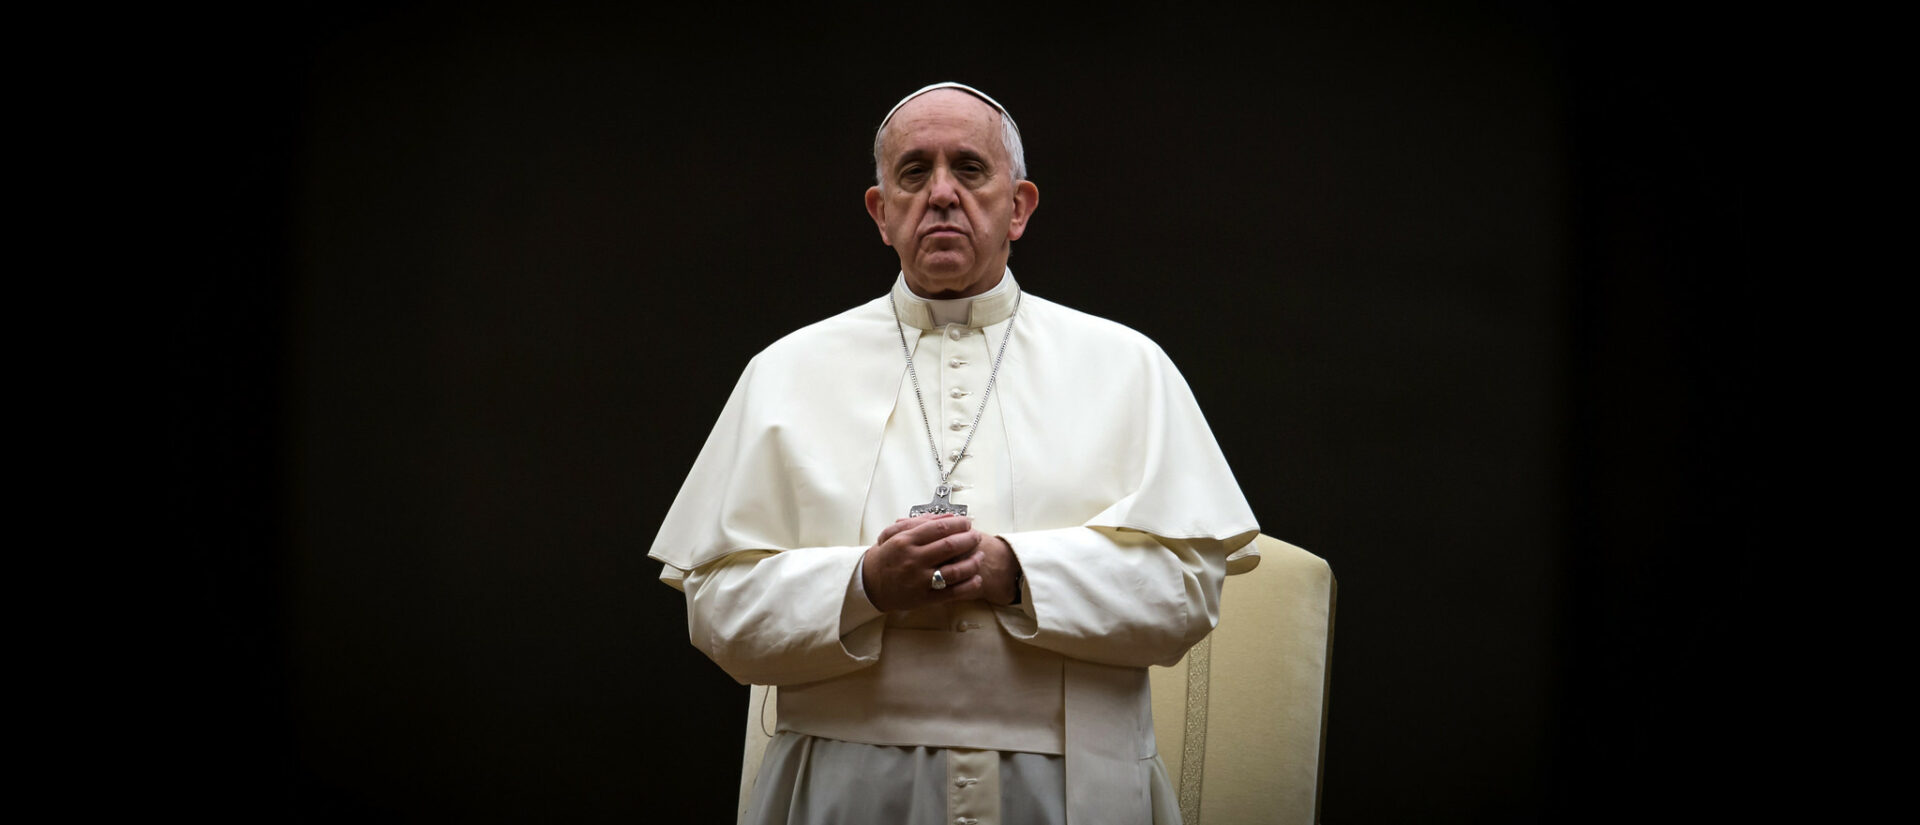 Le pape François a prié pour la fin de la pandémie | © Catholic Church England/Flickr/CC BY-NC-SA 2.0